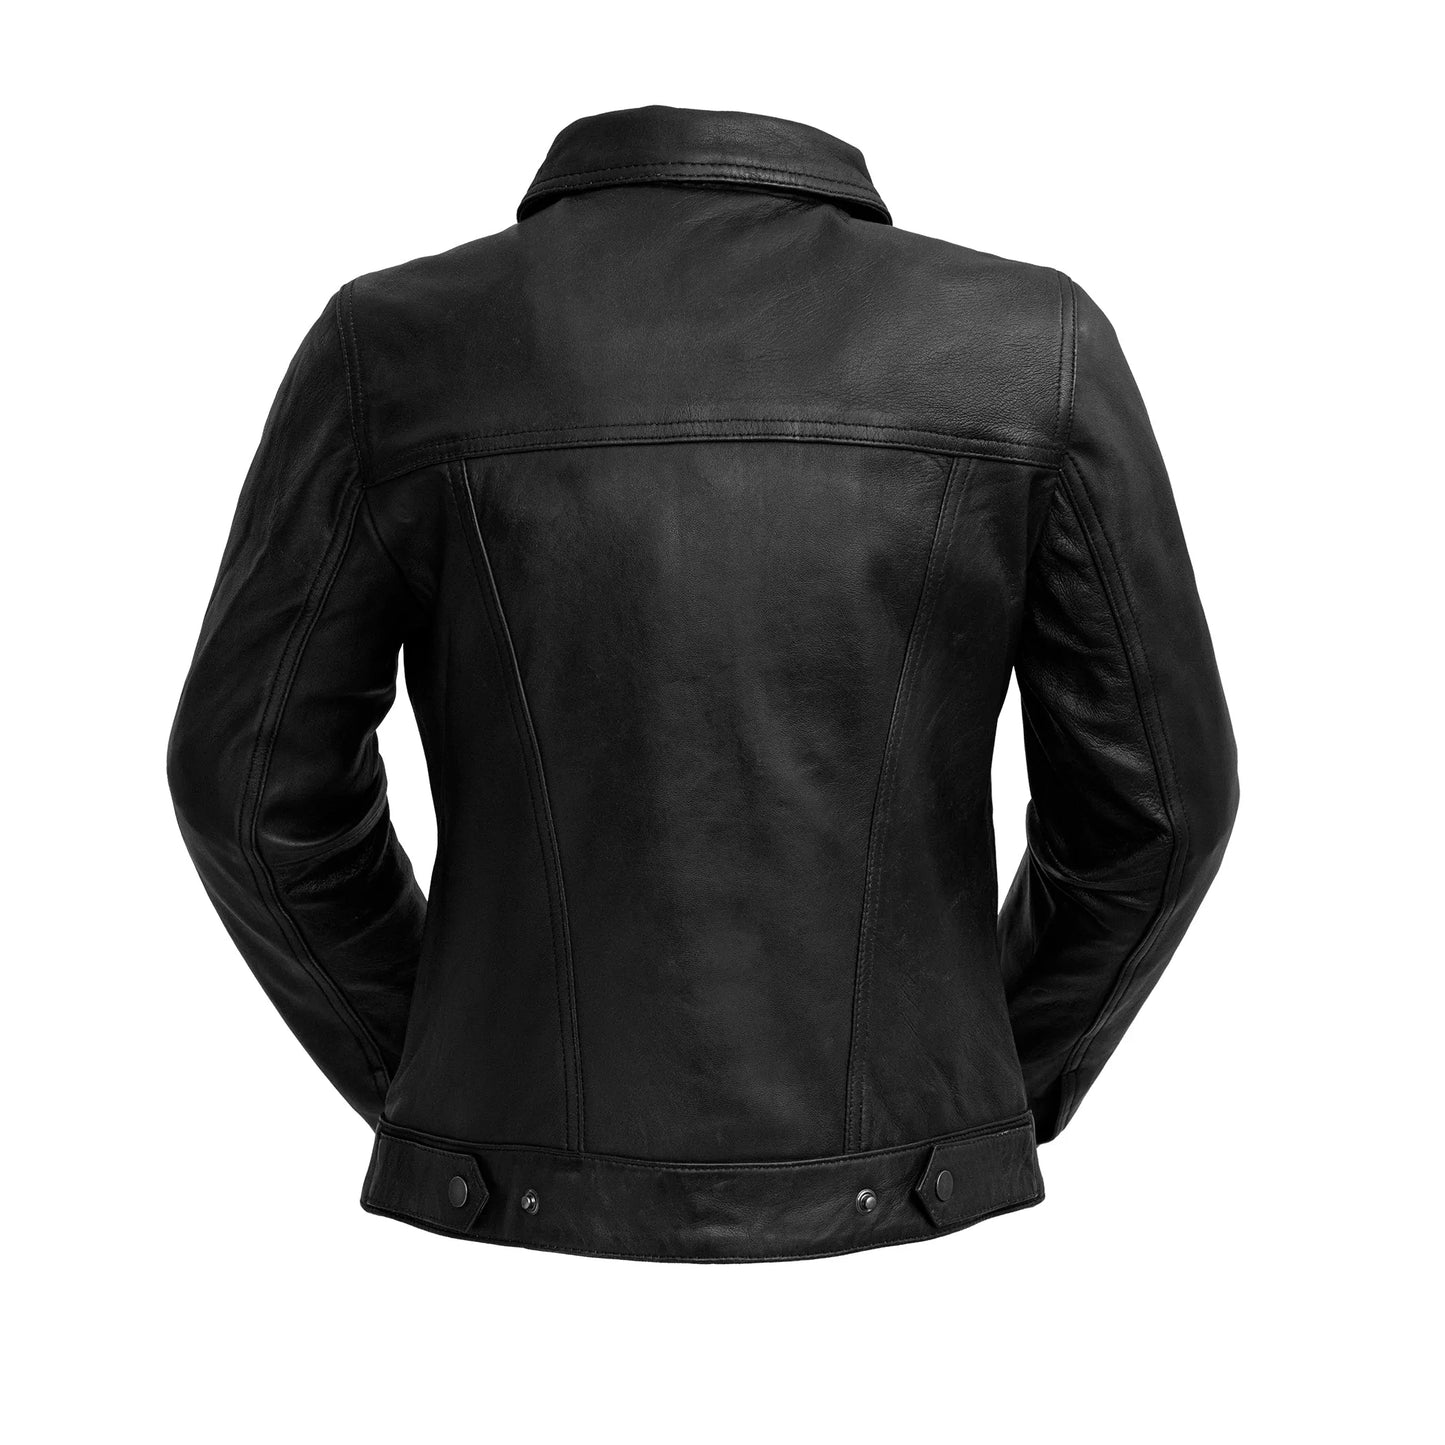 Madison Womens Fashion Leather Jacket Black